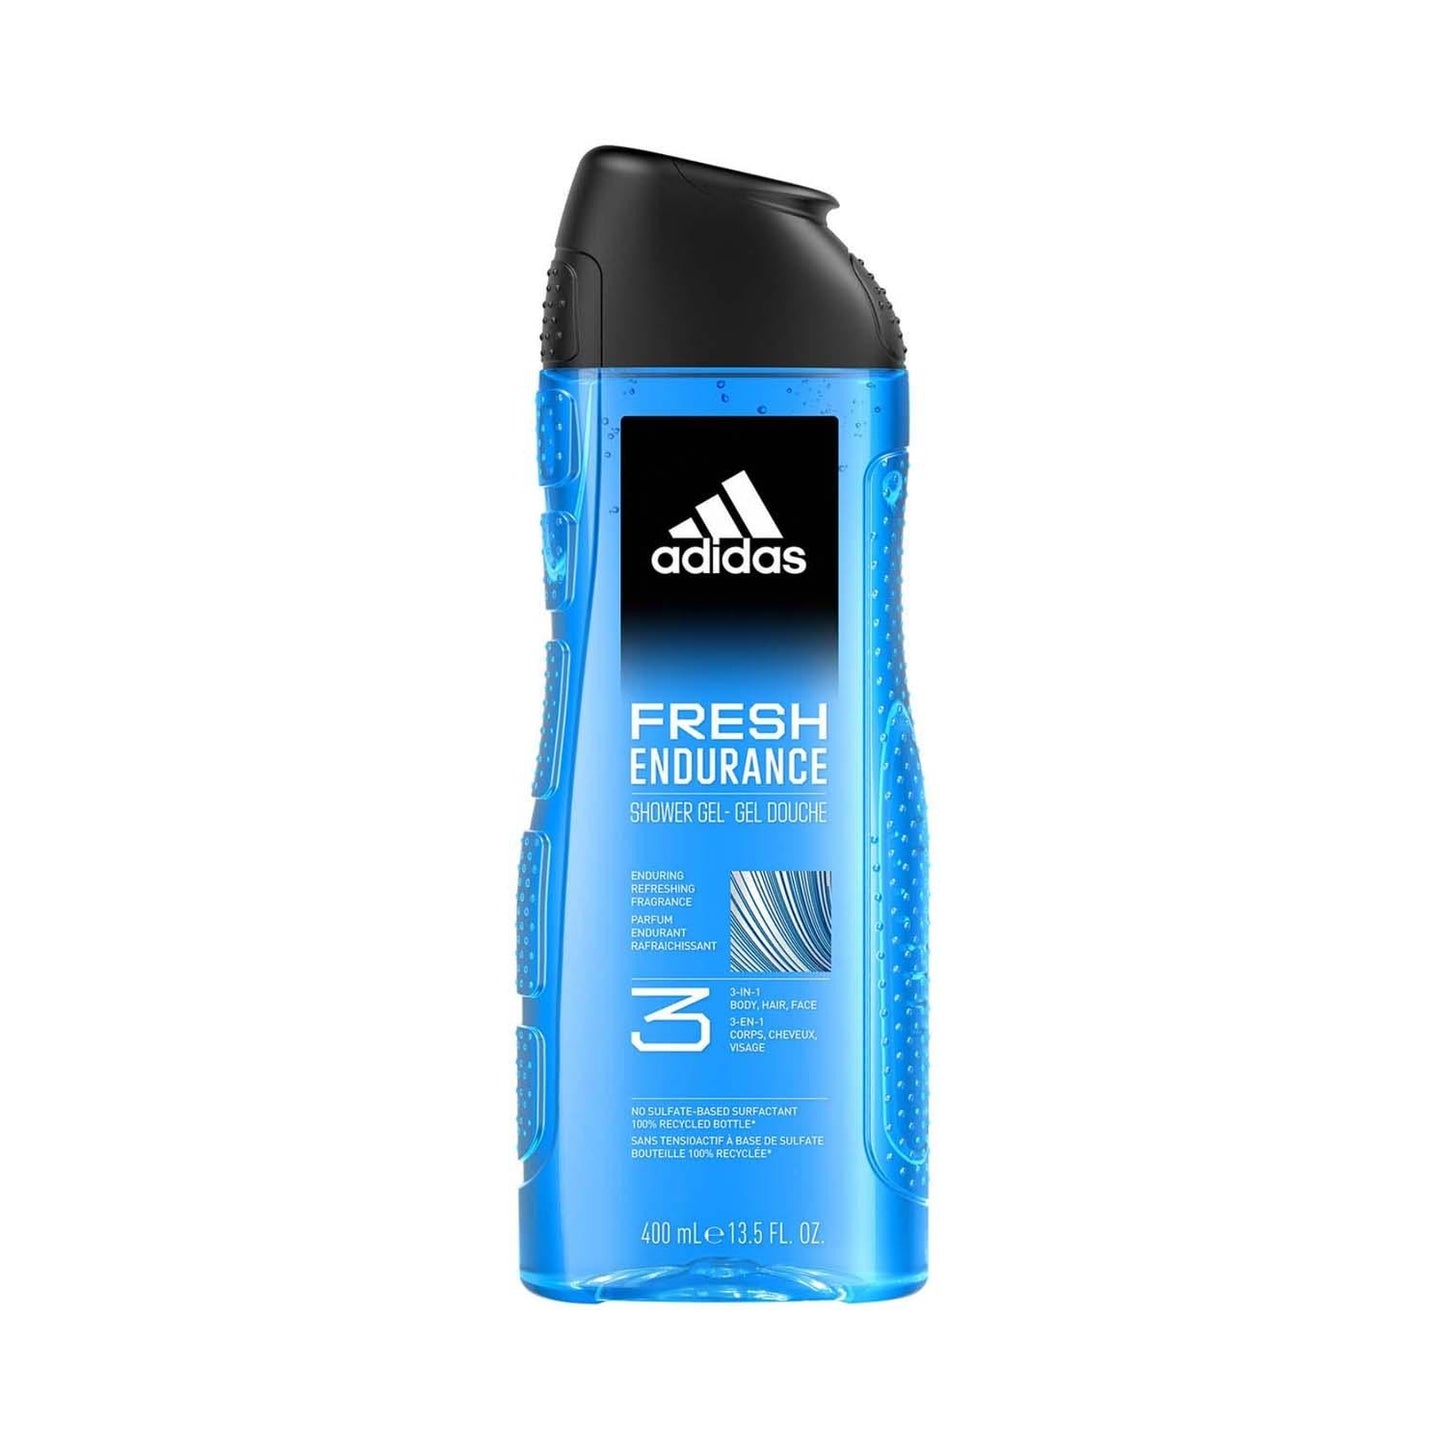 Adidas Fresh Endurance shower gel